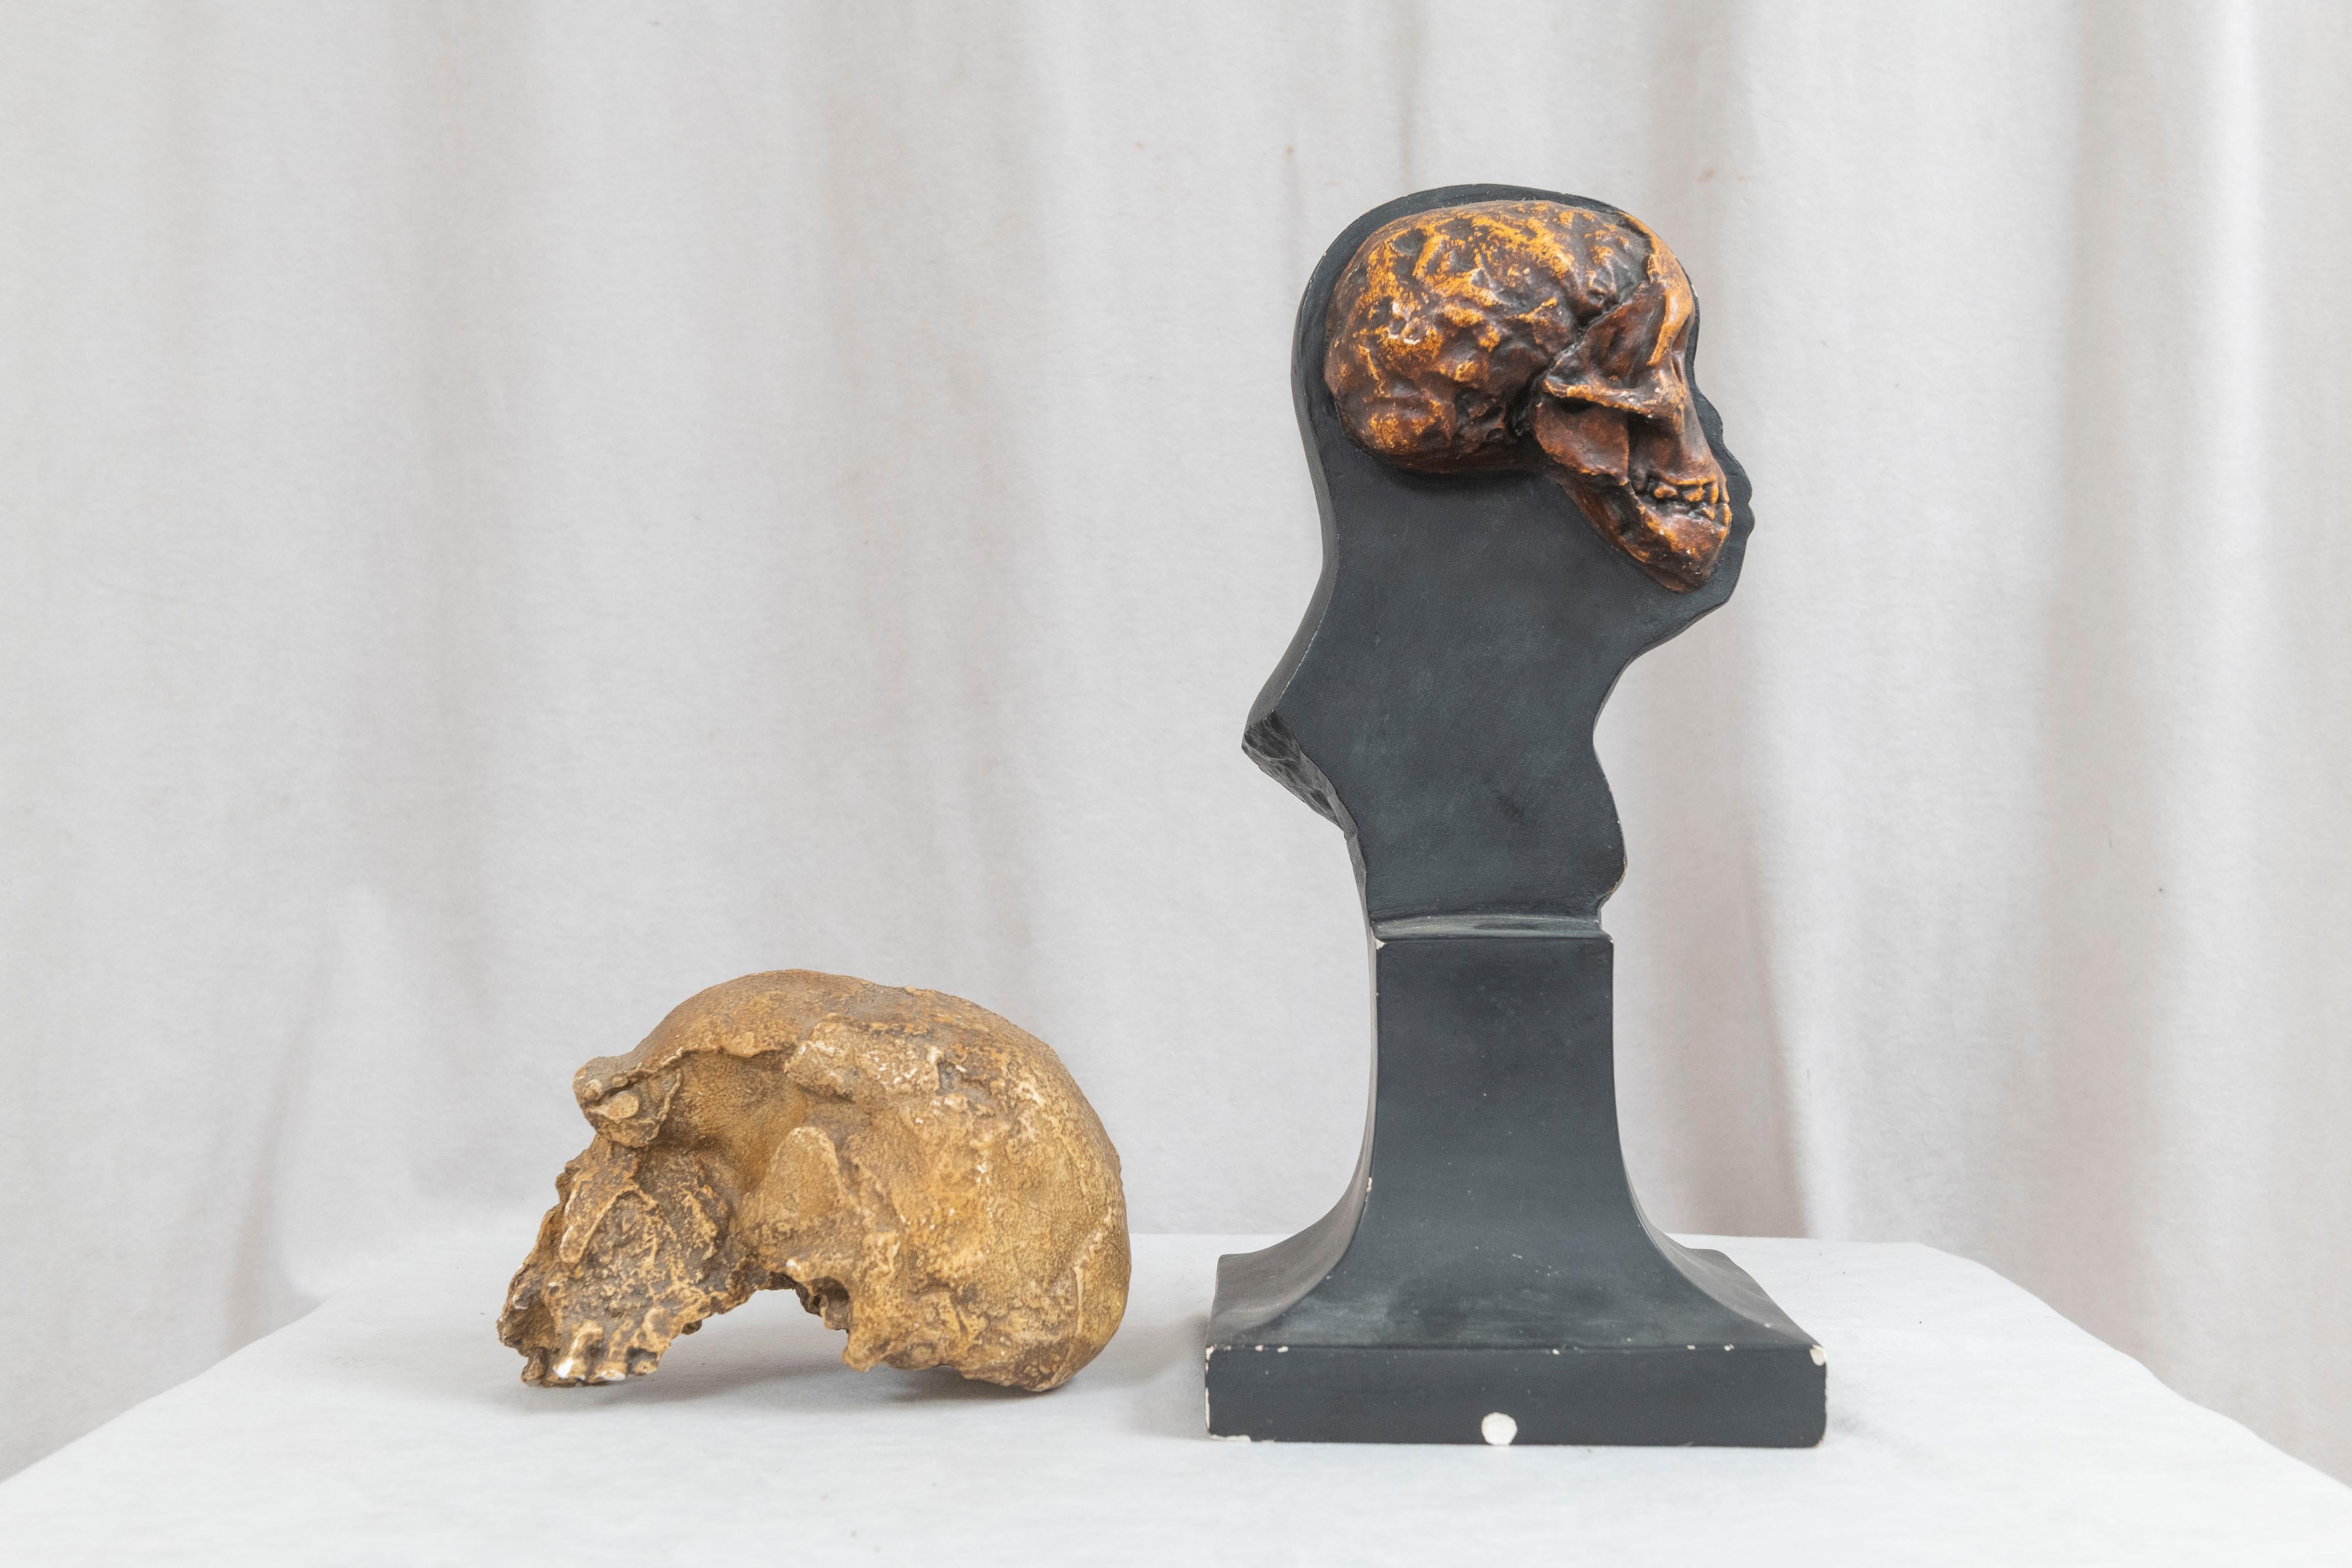 Plaster Anthropology Study of Man Sculpture & Skull University Museum Philadelphia, 1925